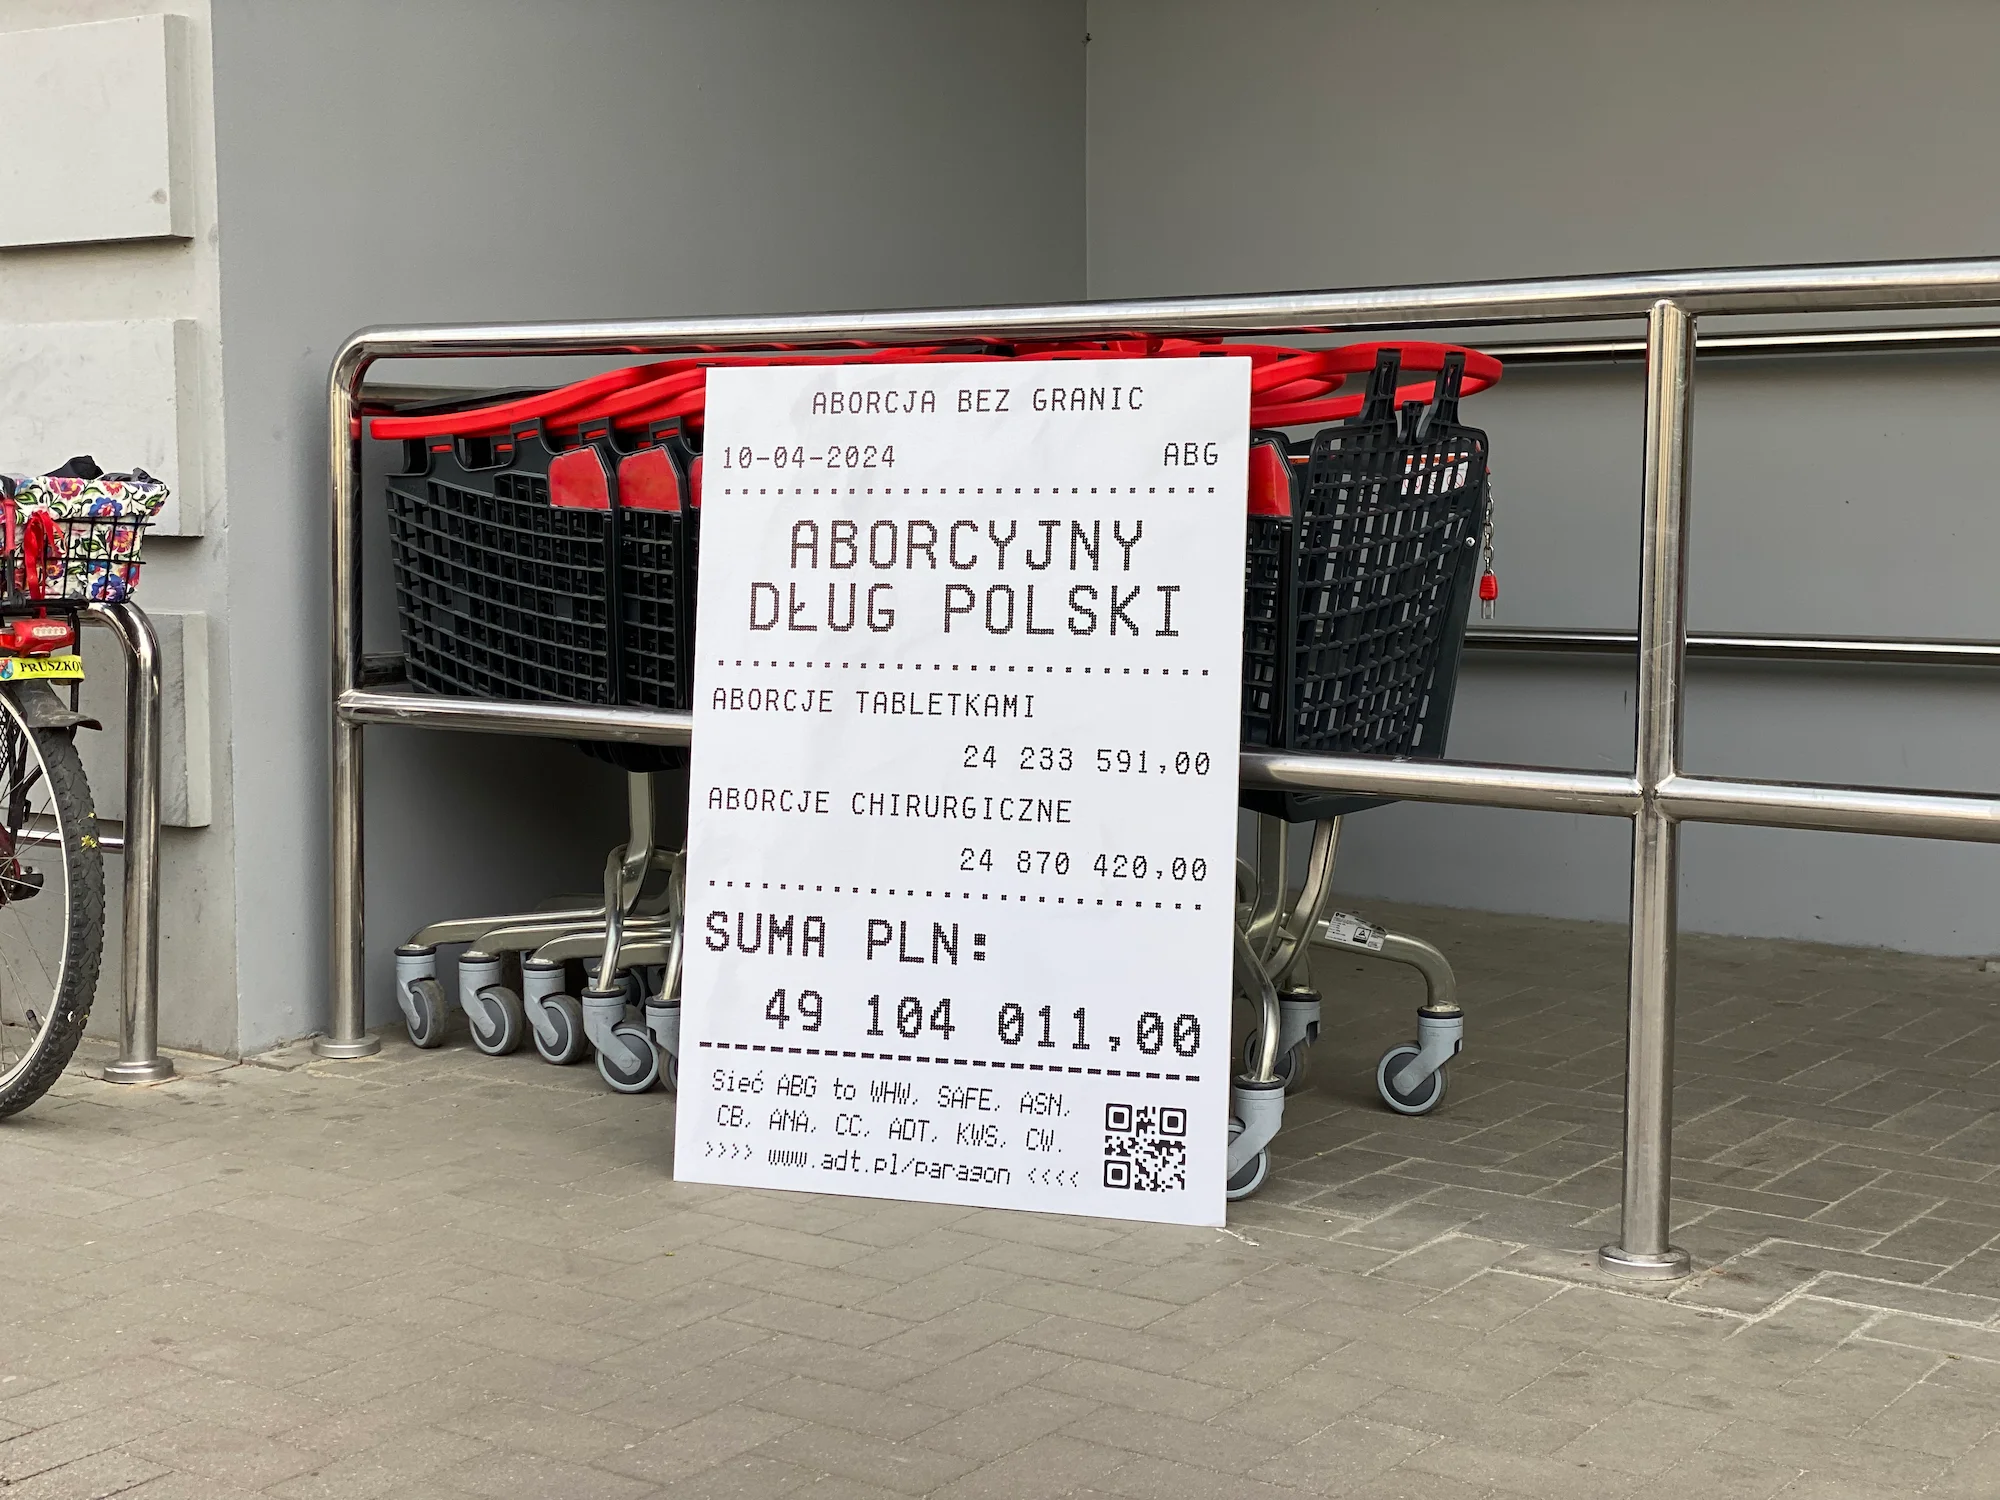 Paragon z Polskim Długiem Aborcyjnym oparty o barierki przy wózkach zakupowych przed sklepem.